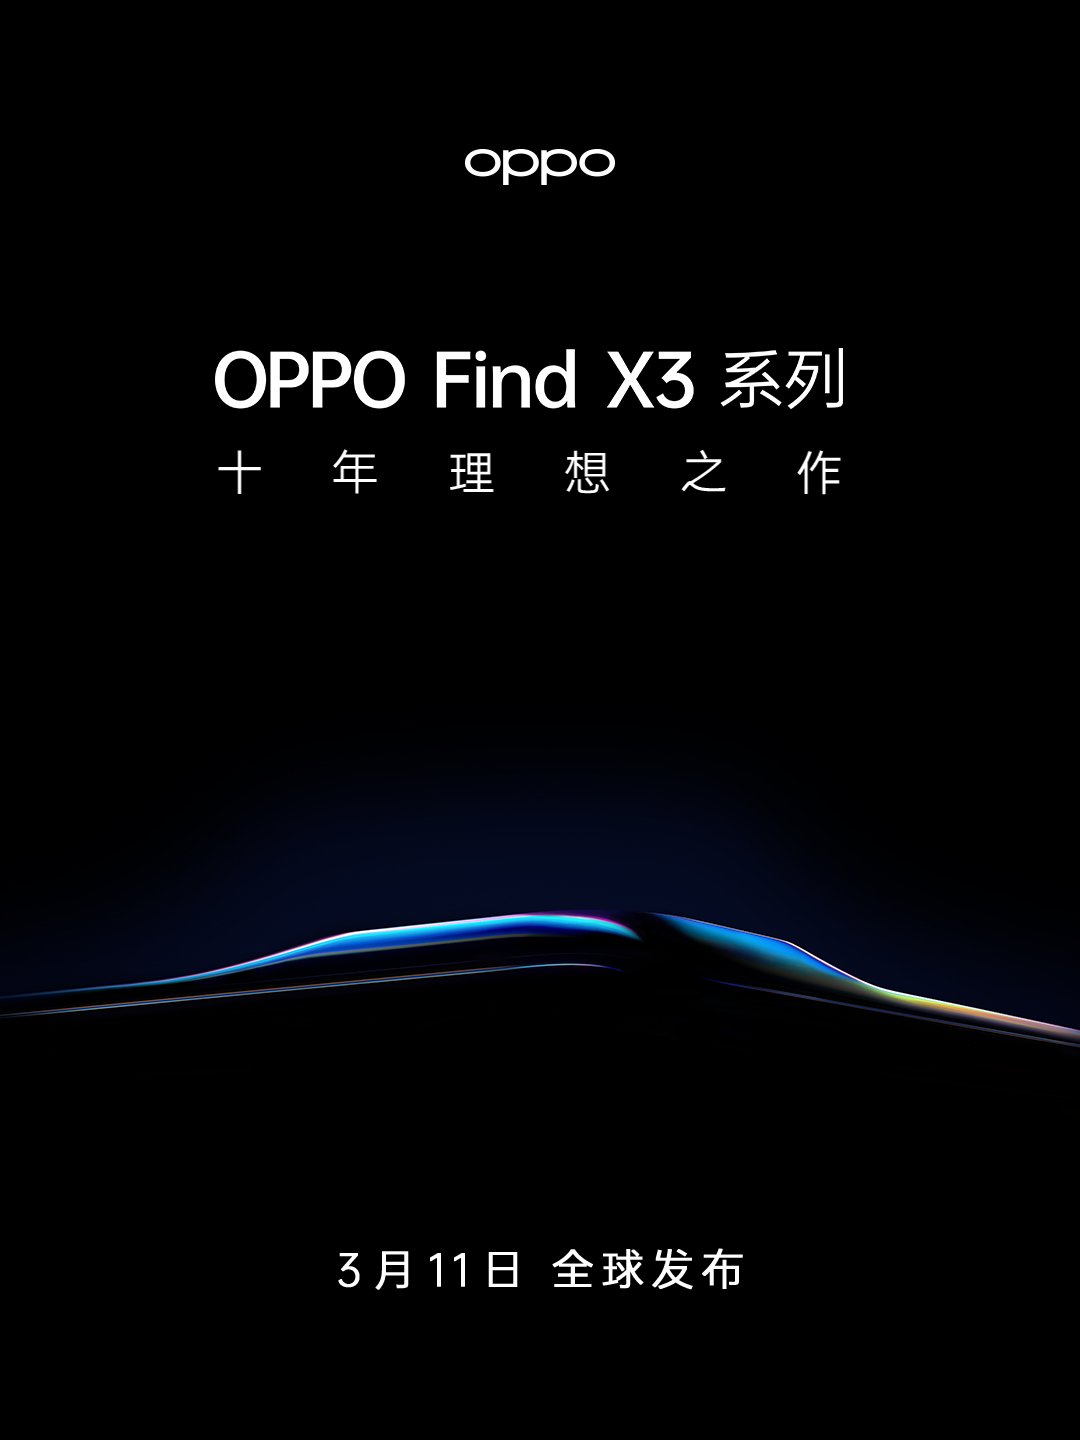 OPPO Find X3 daty fandefasana